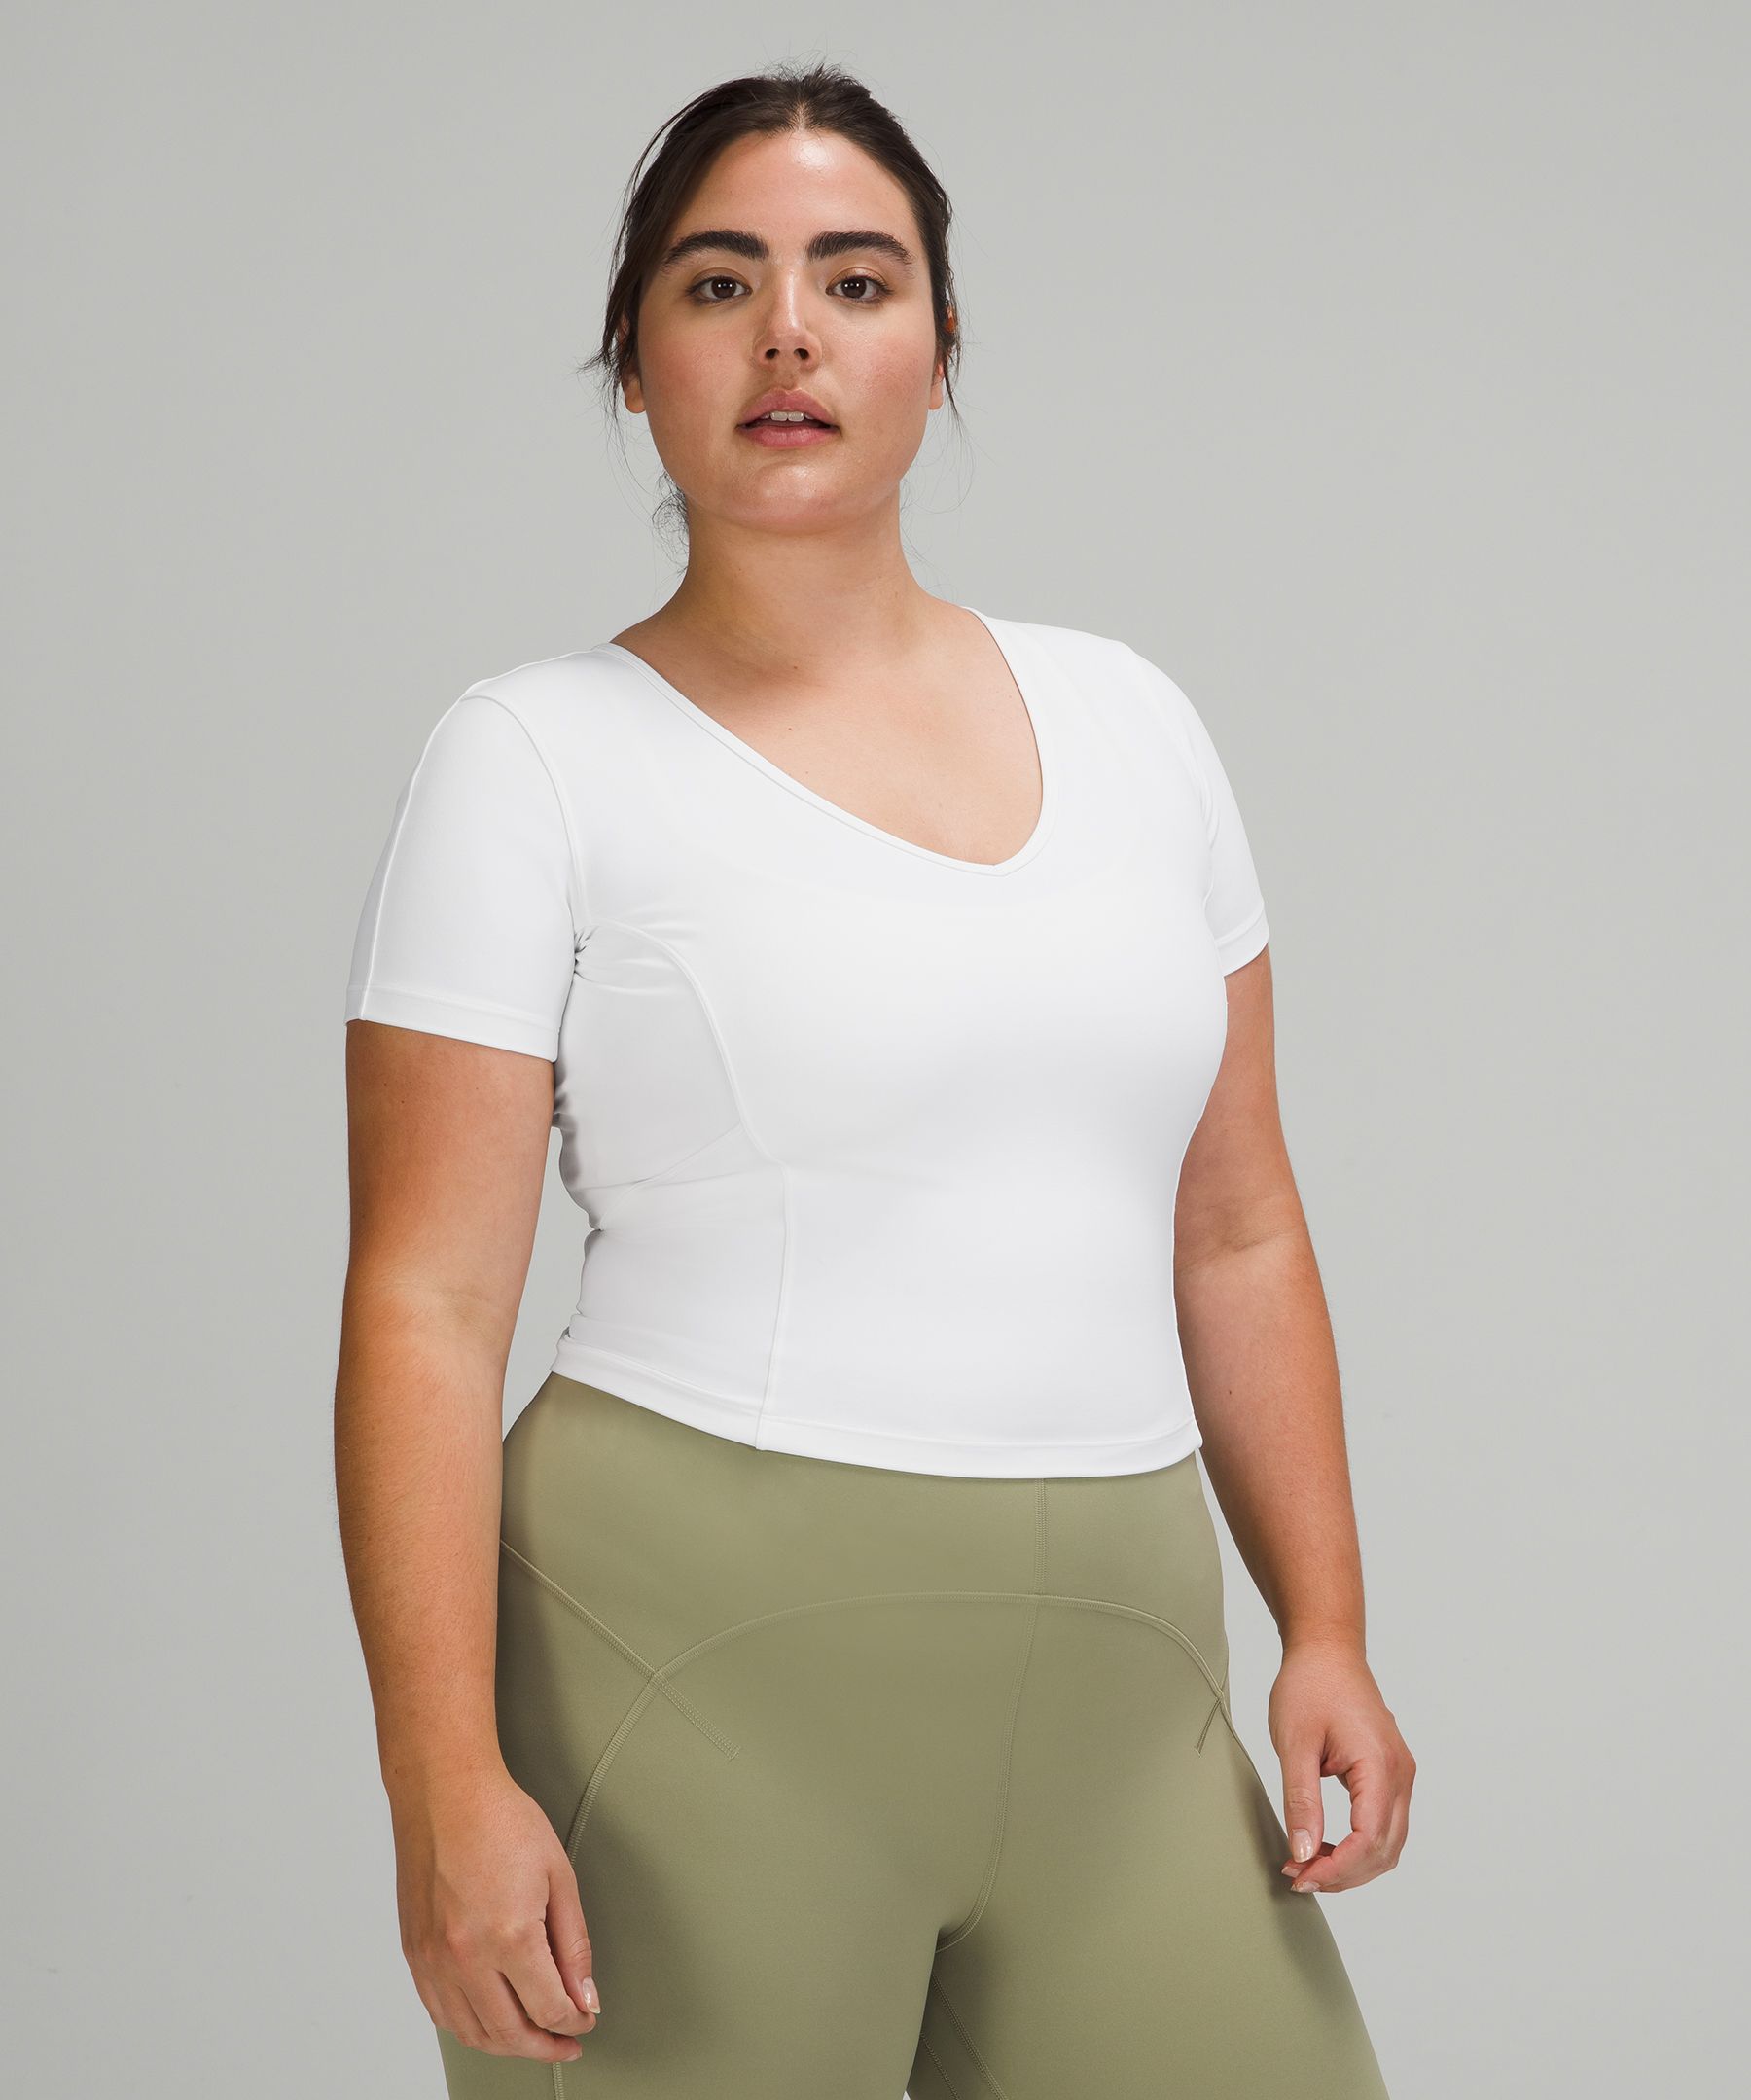 Lululemon Nulu Cropped Slim Yoga Short Sleeve Shirt - 127825261